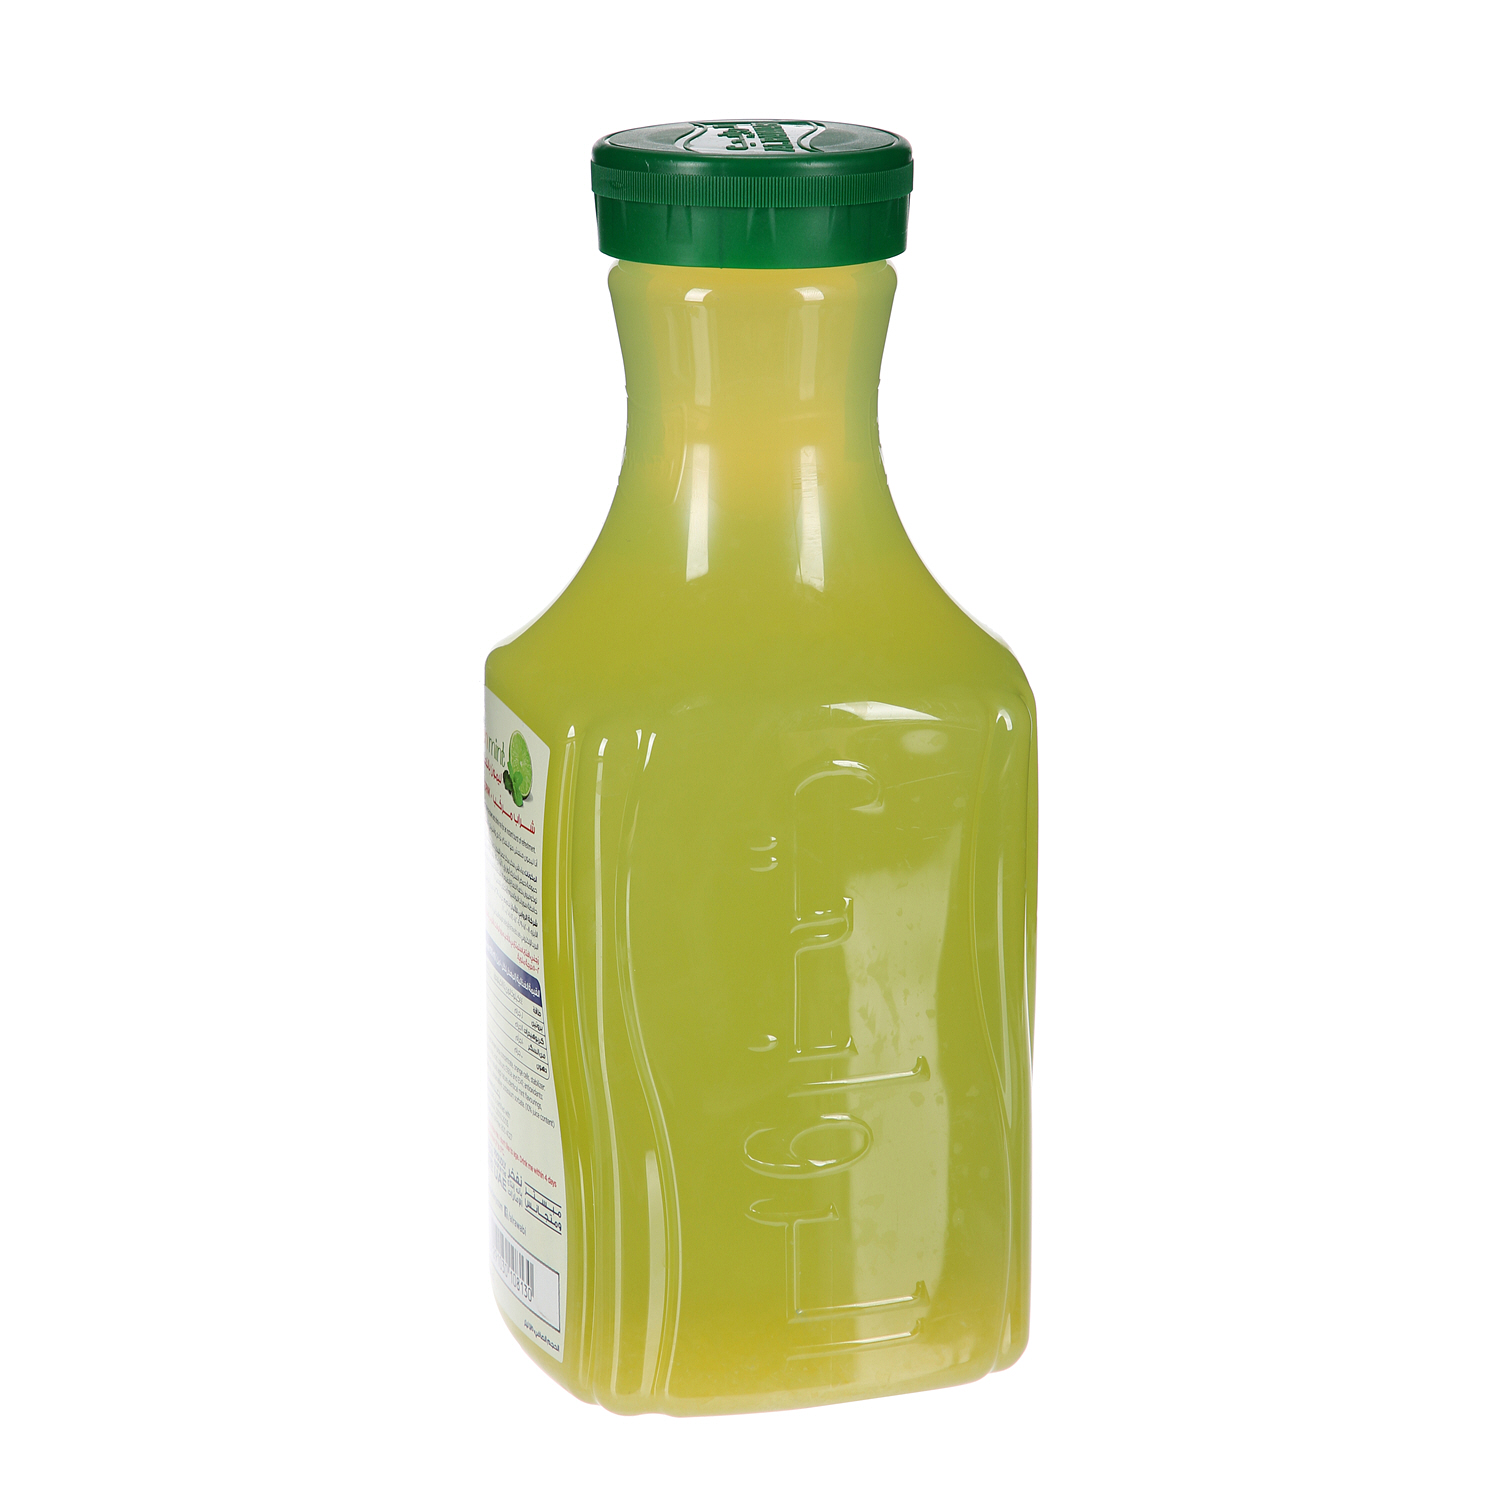 الروابي عصير الليمون والنعناع 1.75 لتر